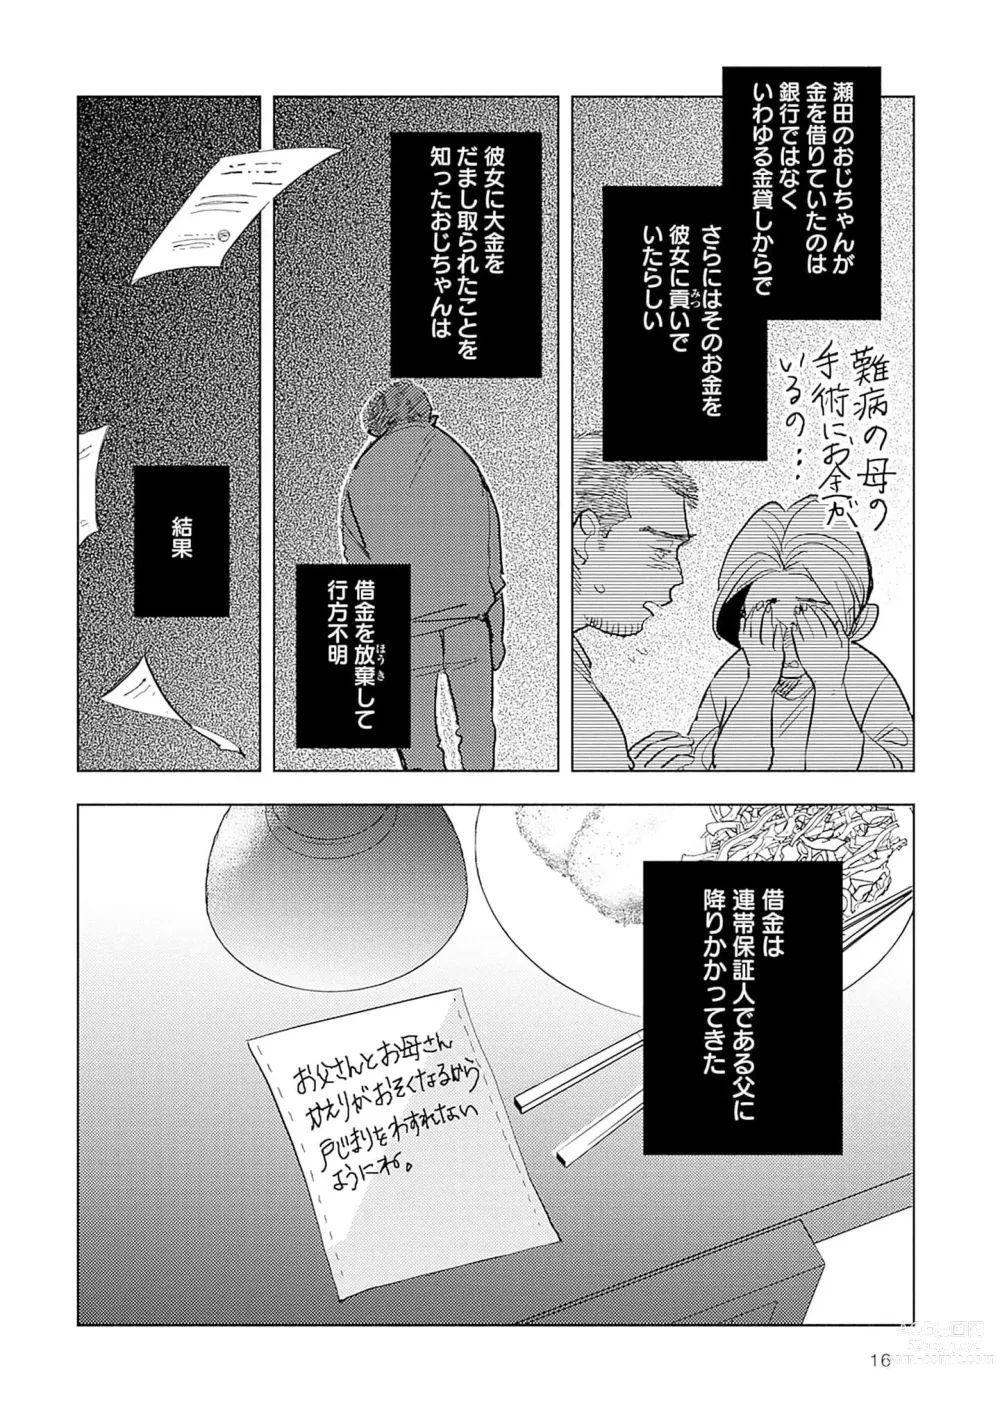 Page 18 of manga Strawberry na Days 2